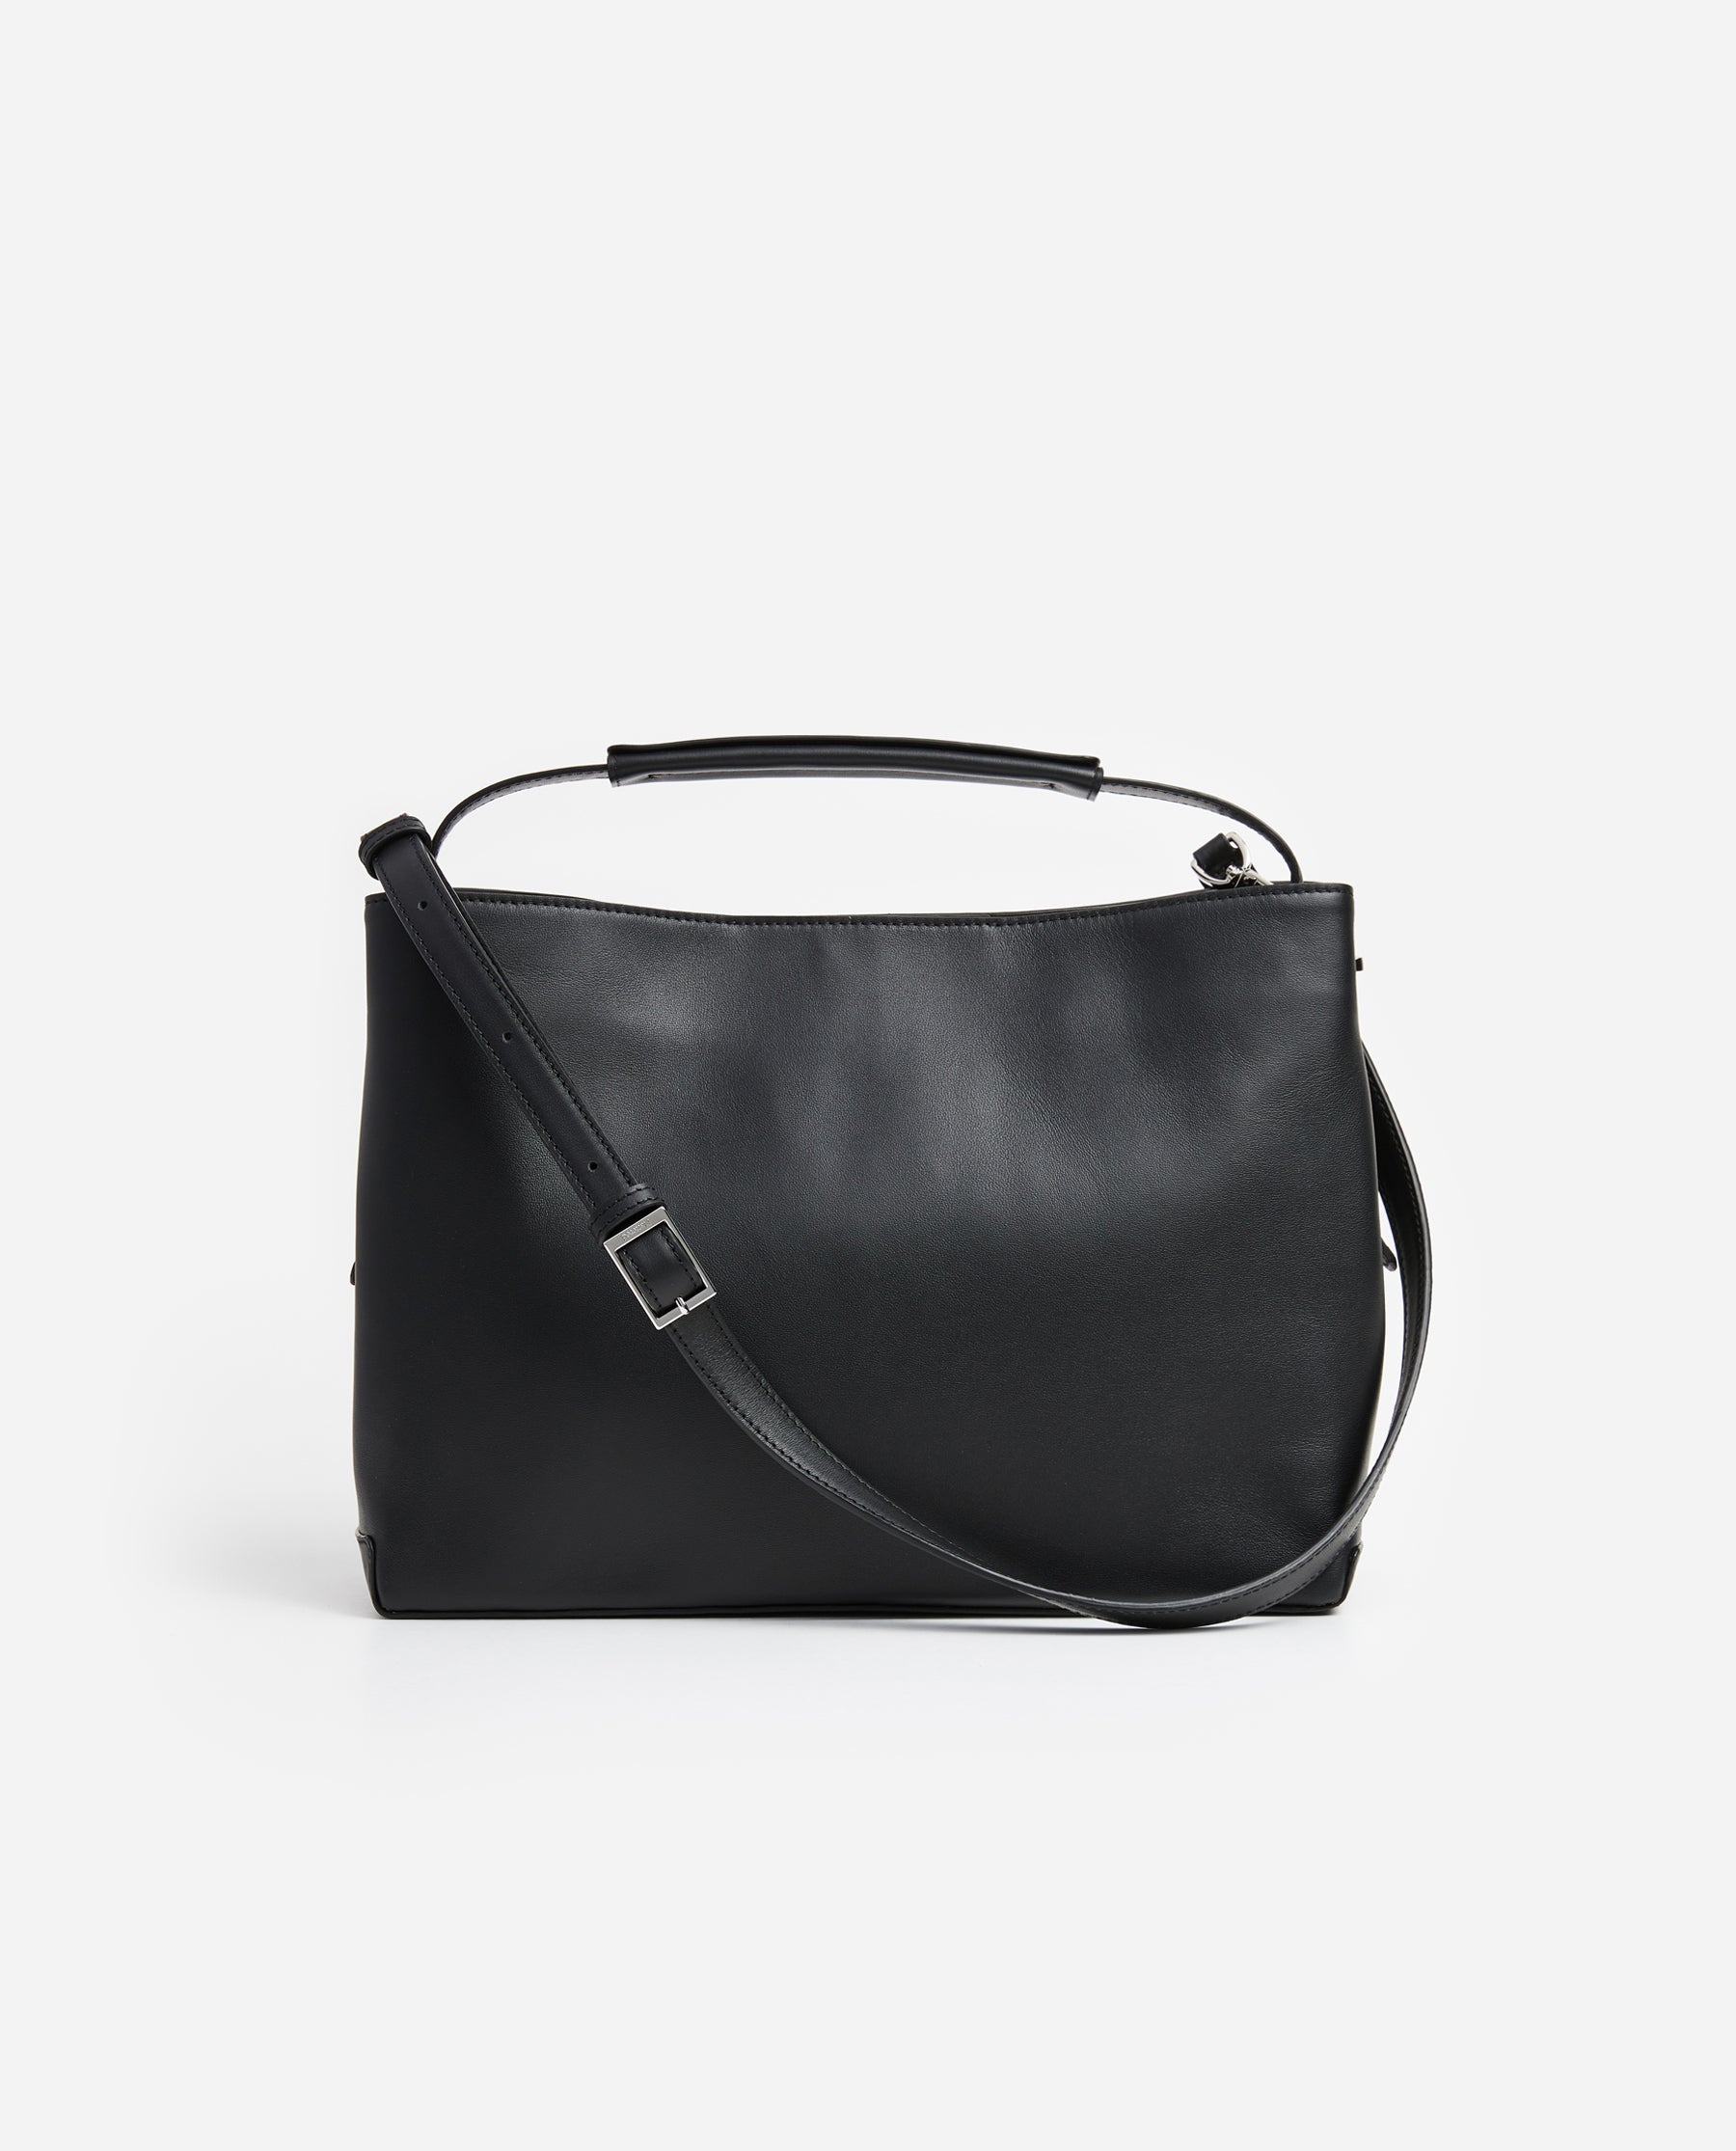 Harper Grande Handbag Leather Black – Flattered